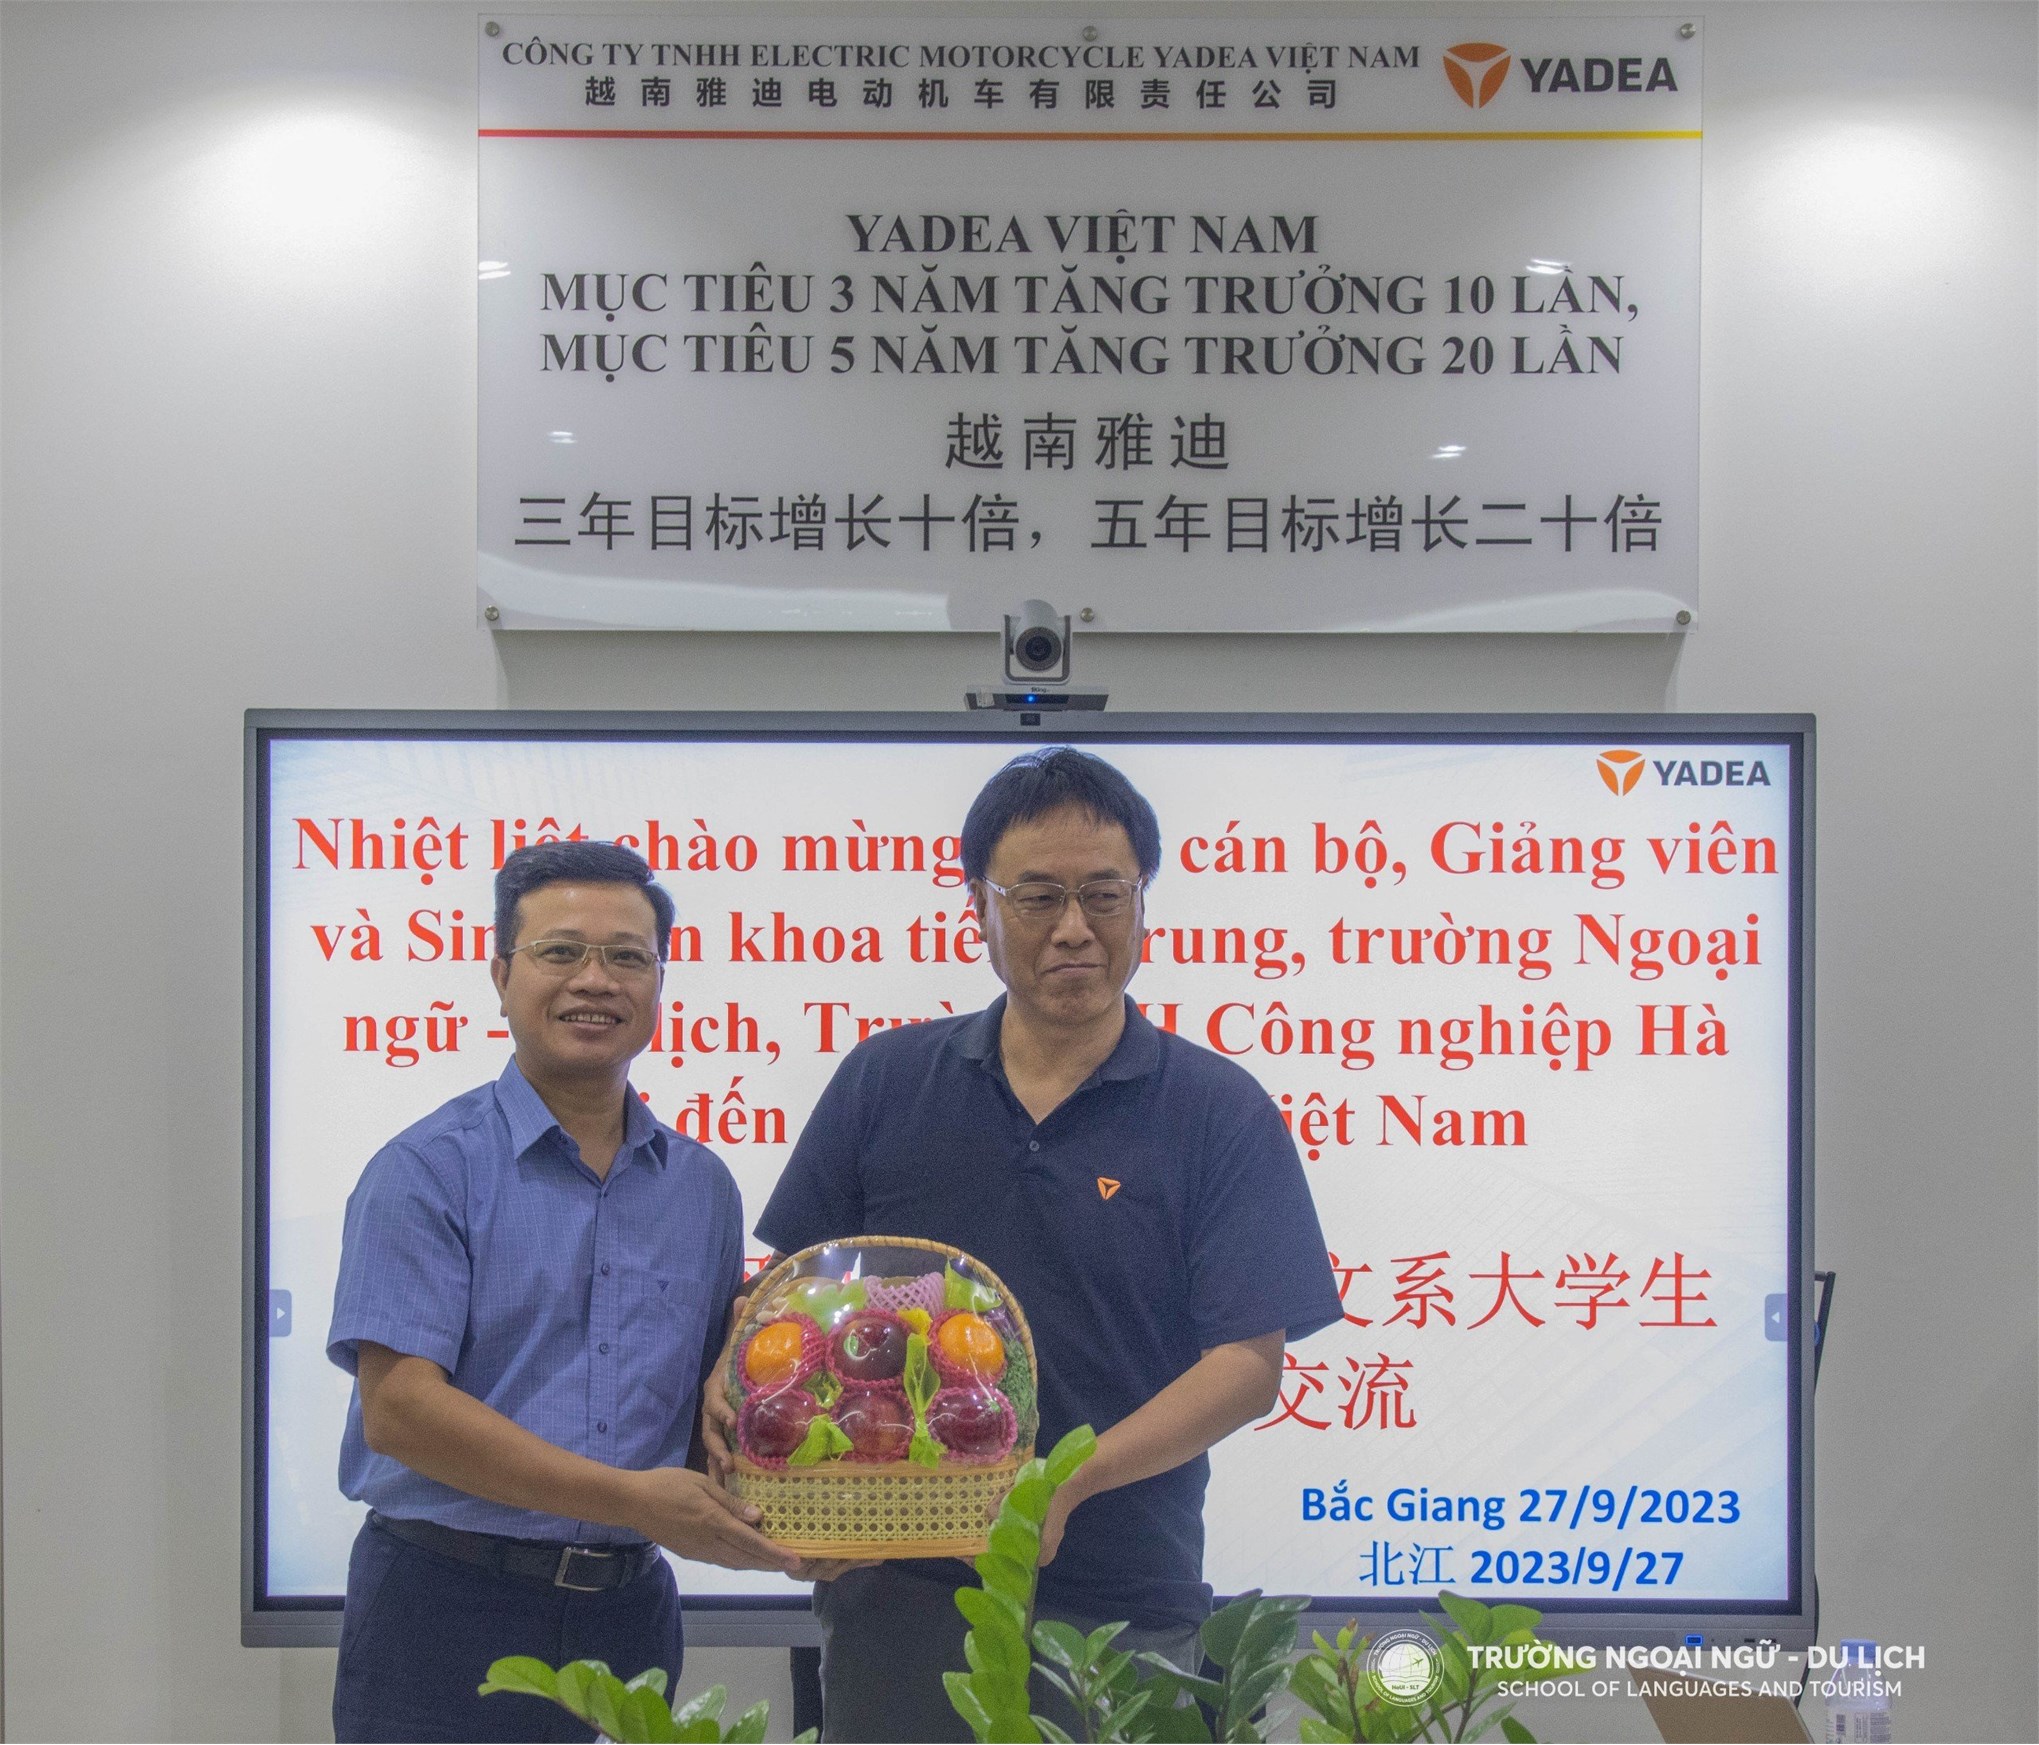 Tham quan Công ty TNHH ELECTRIC MOTORCYCLE YADEA Việt Nam